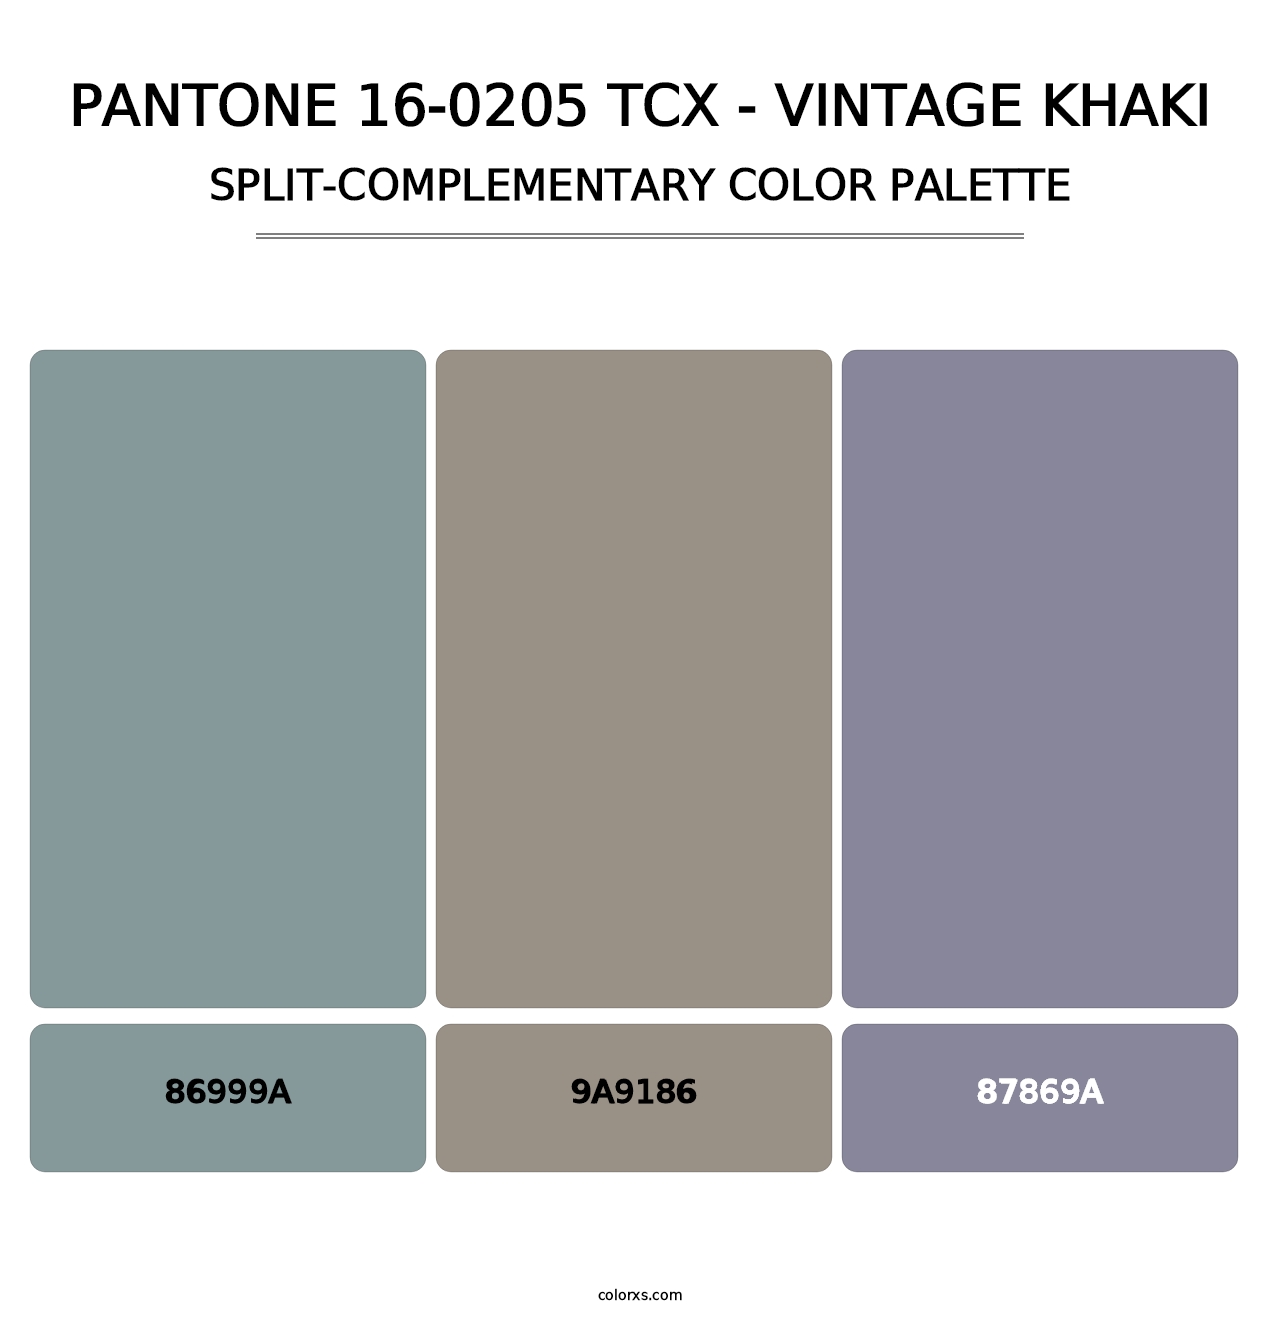 PANTONE 16-0205 TCX - Vintage Khaki - Split-Complementary Color Palette